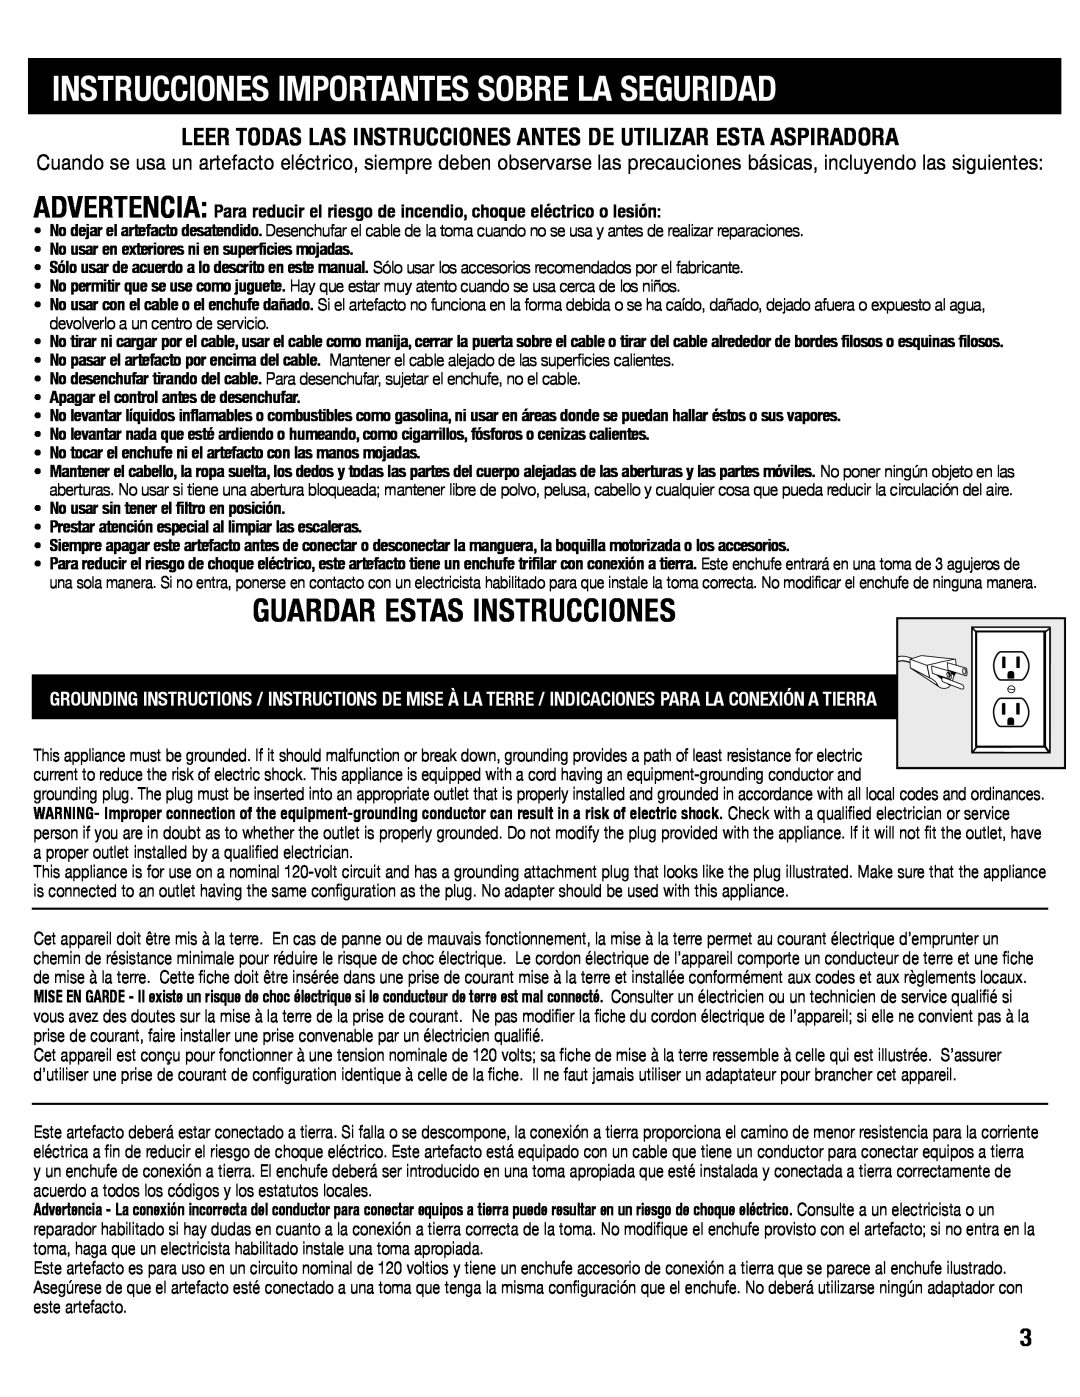 Eureka SC6610 manual Instrucciones Importantes Sobre La Seguridad, Guardar Estas Instrucciones 